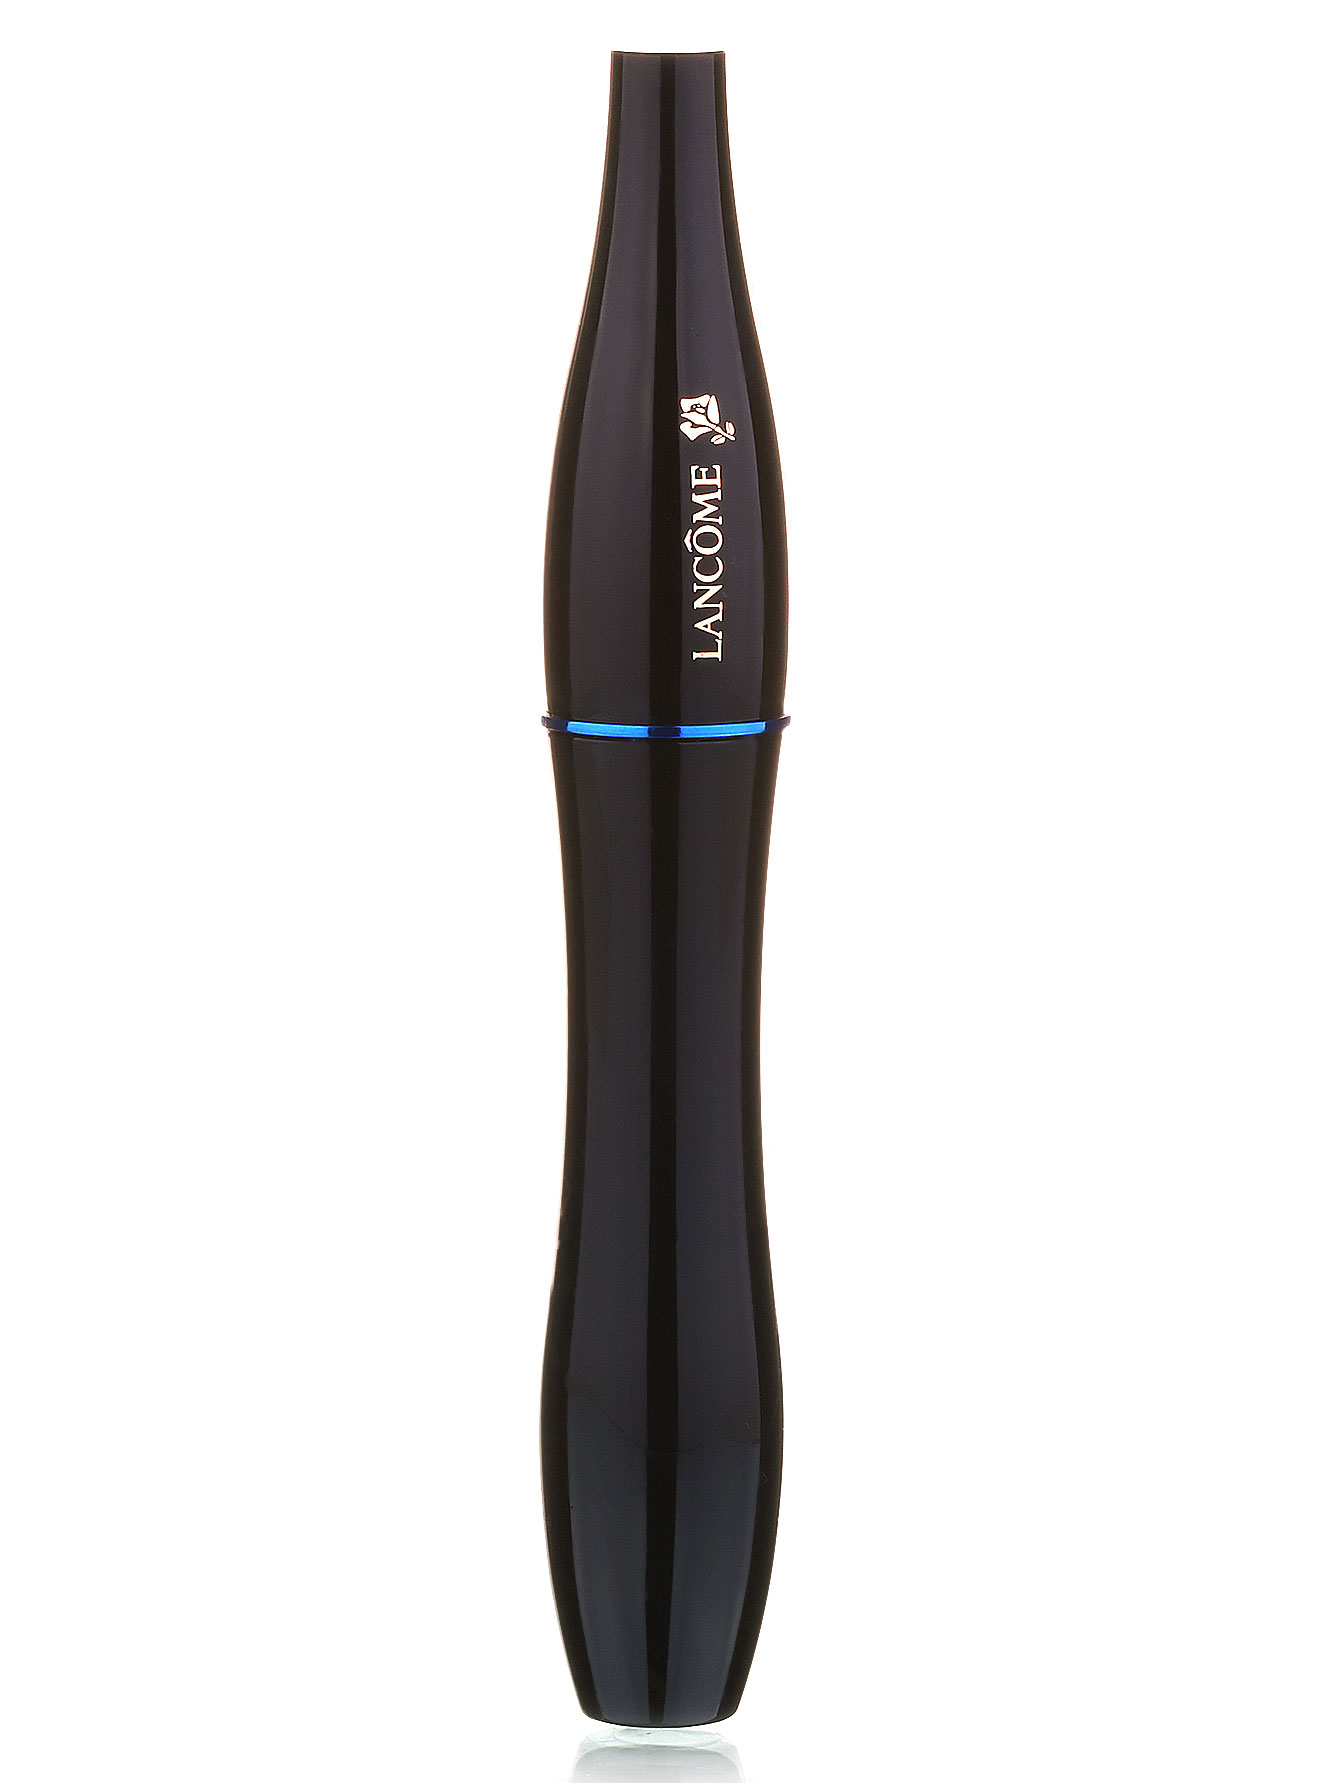  Тушь для ресниц водостойкая - №01 Черный, Hypnose Mascara - Модель Верх-Низ